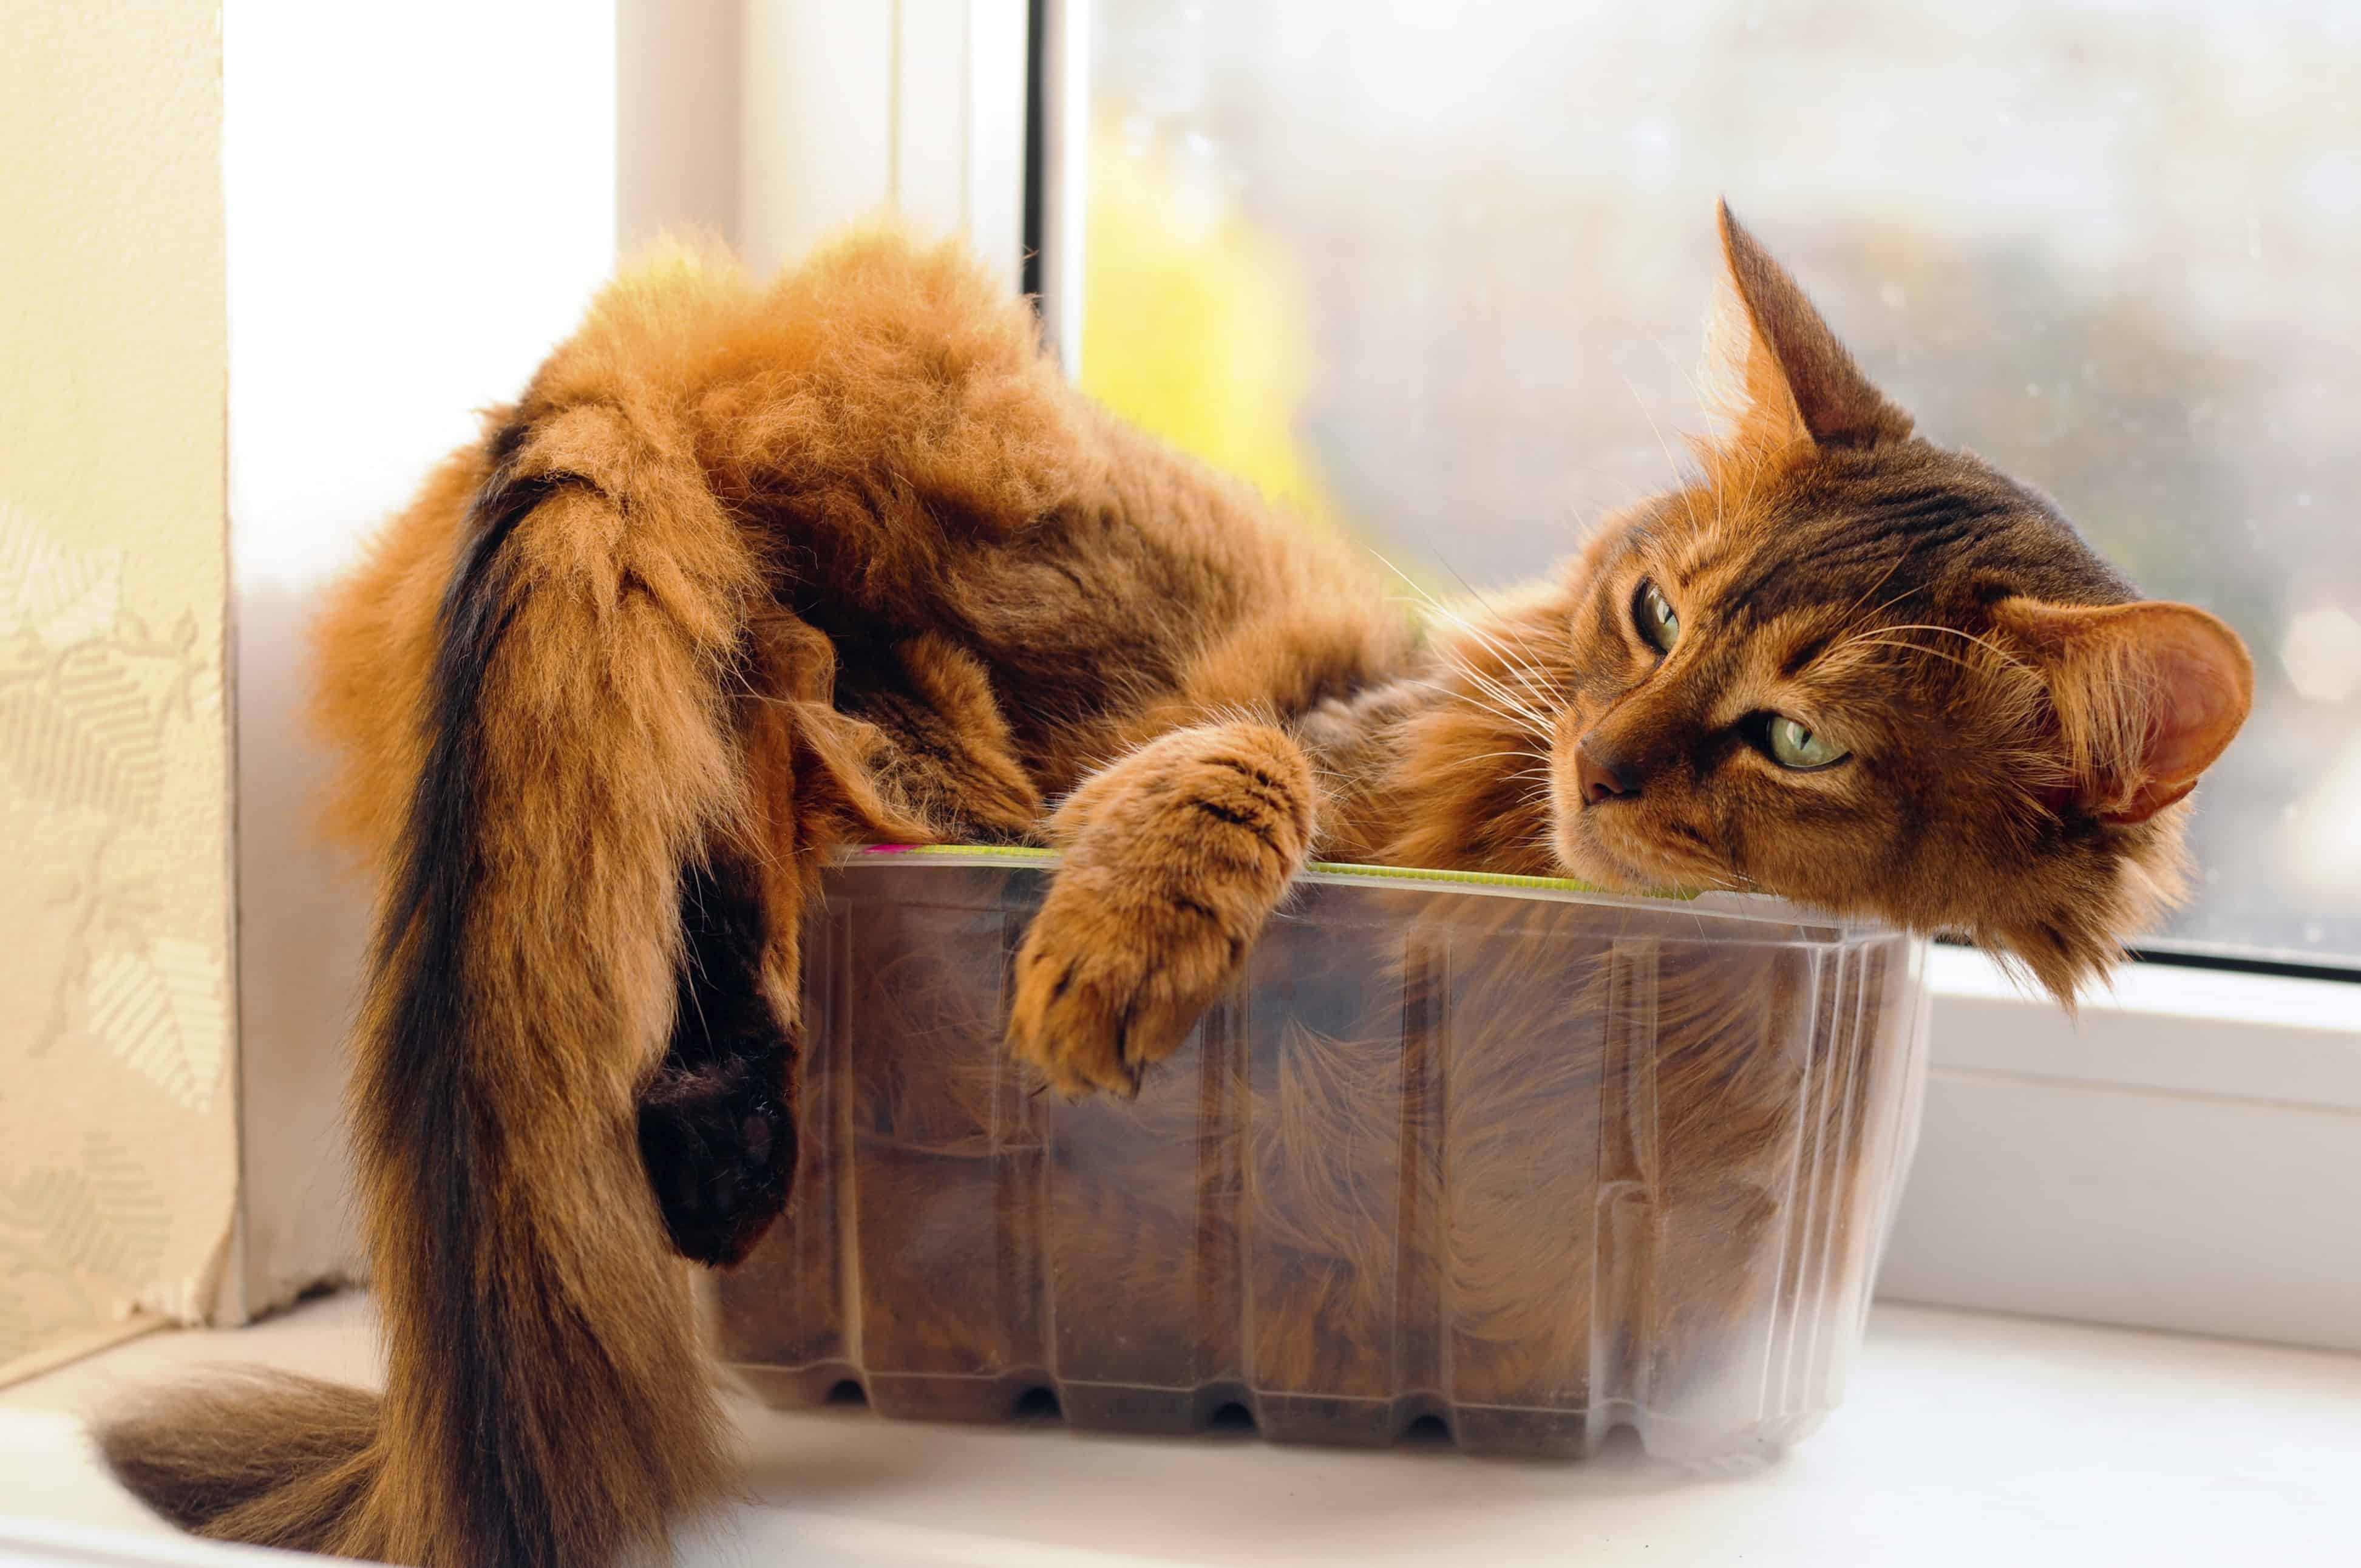 Cute cat in a box